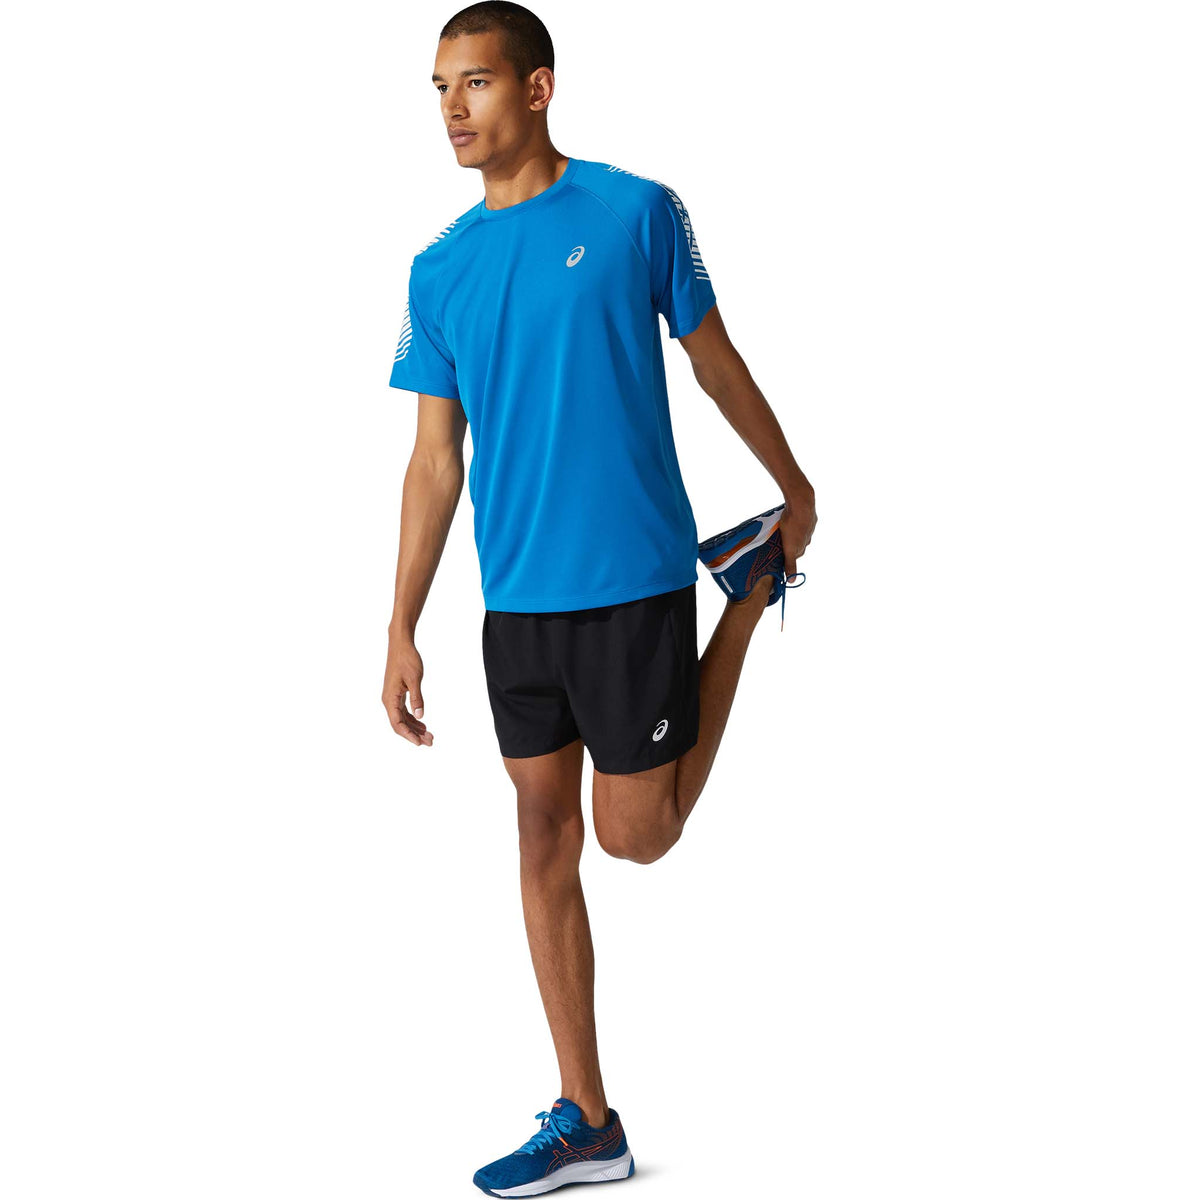 ASICS Icon T-shirt de course à pied bleu homme live